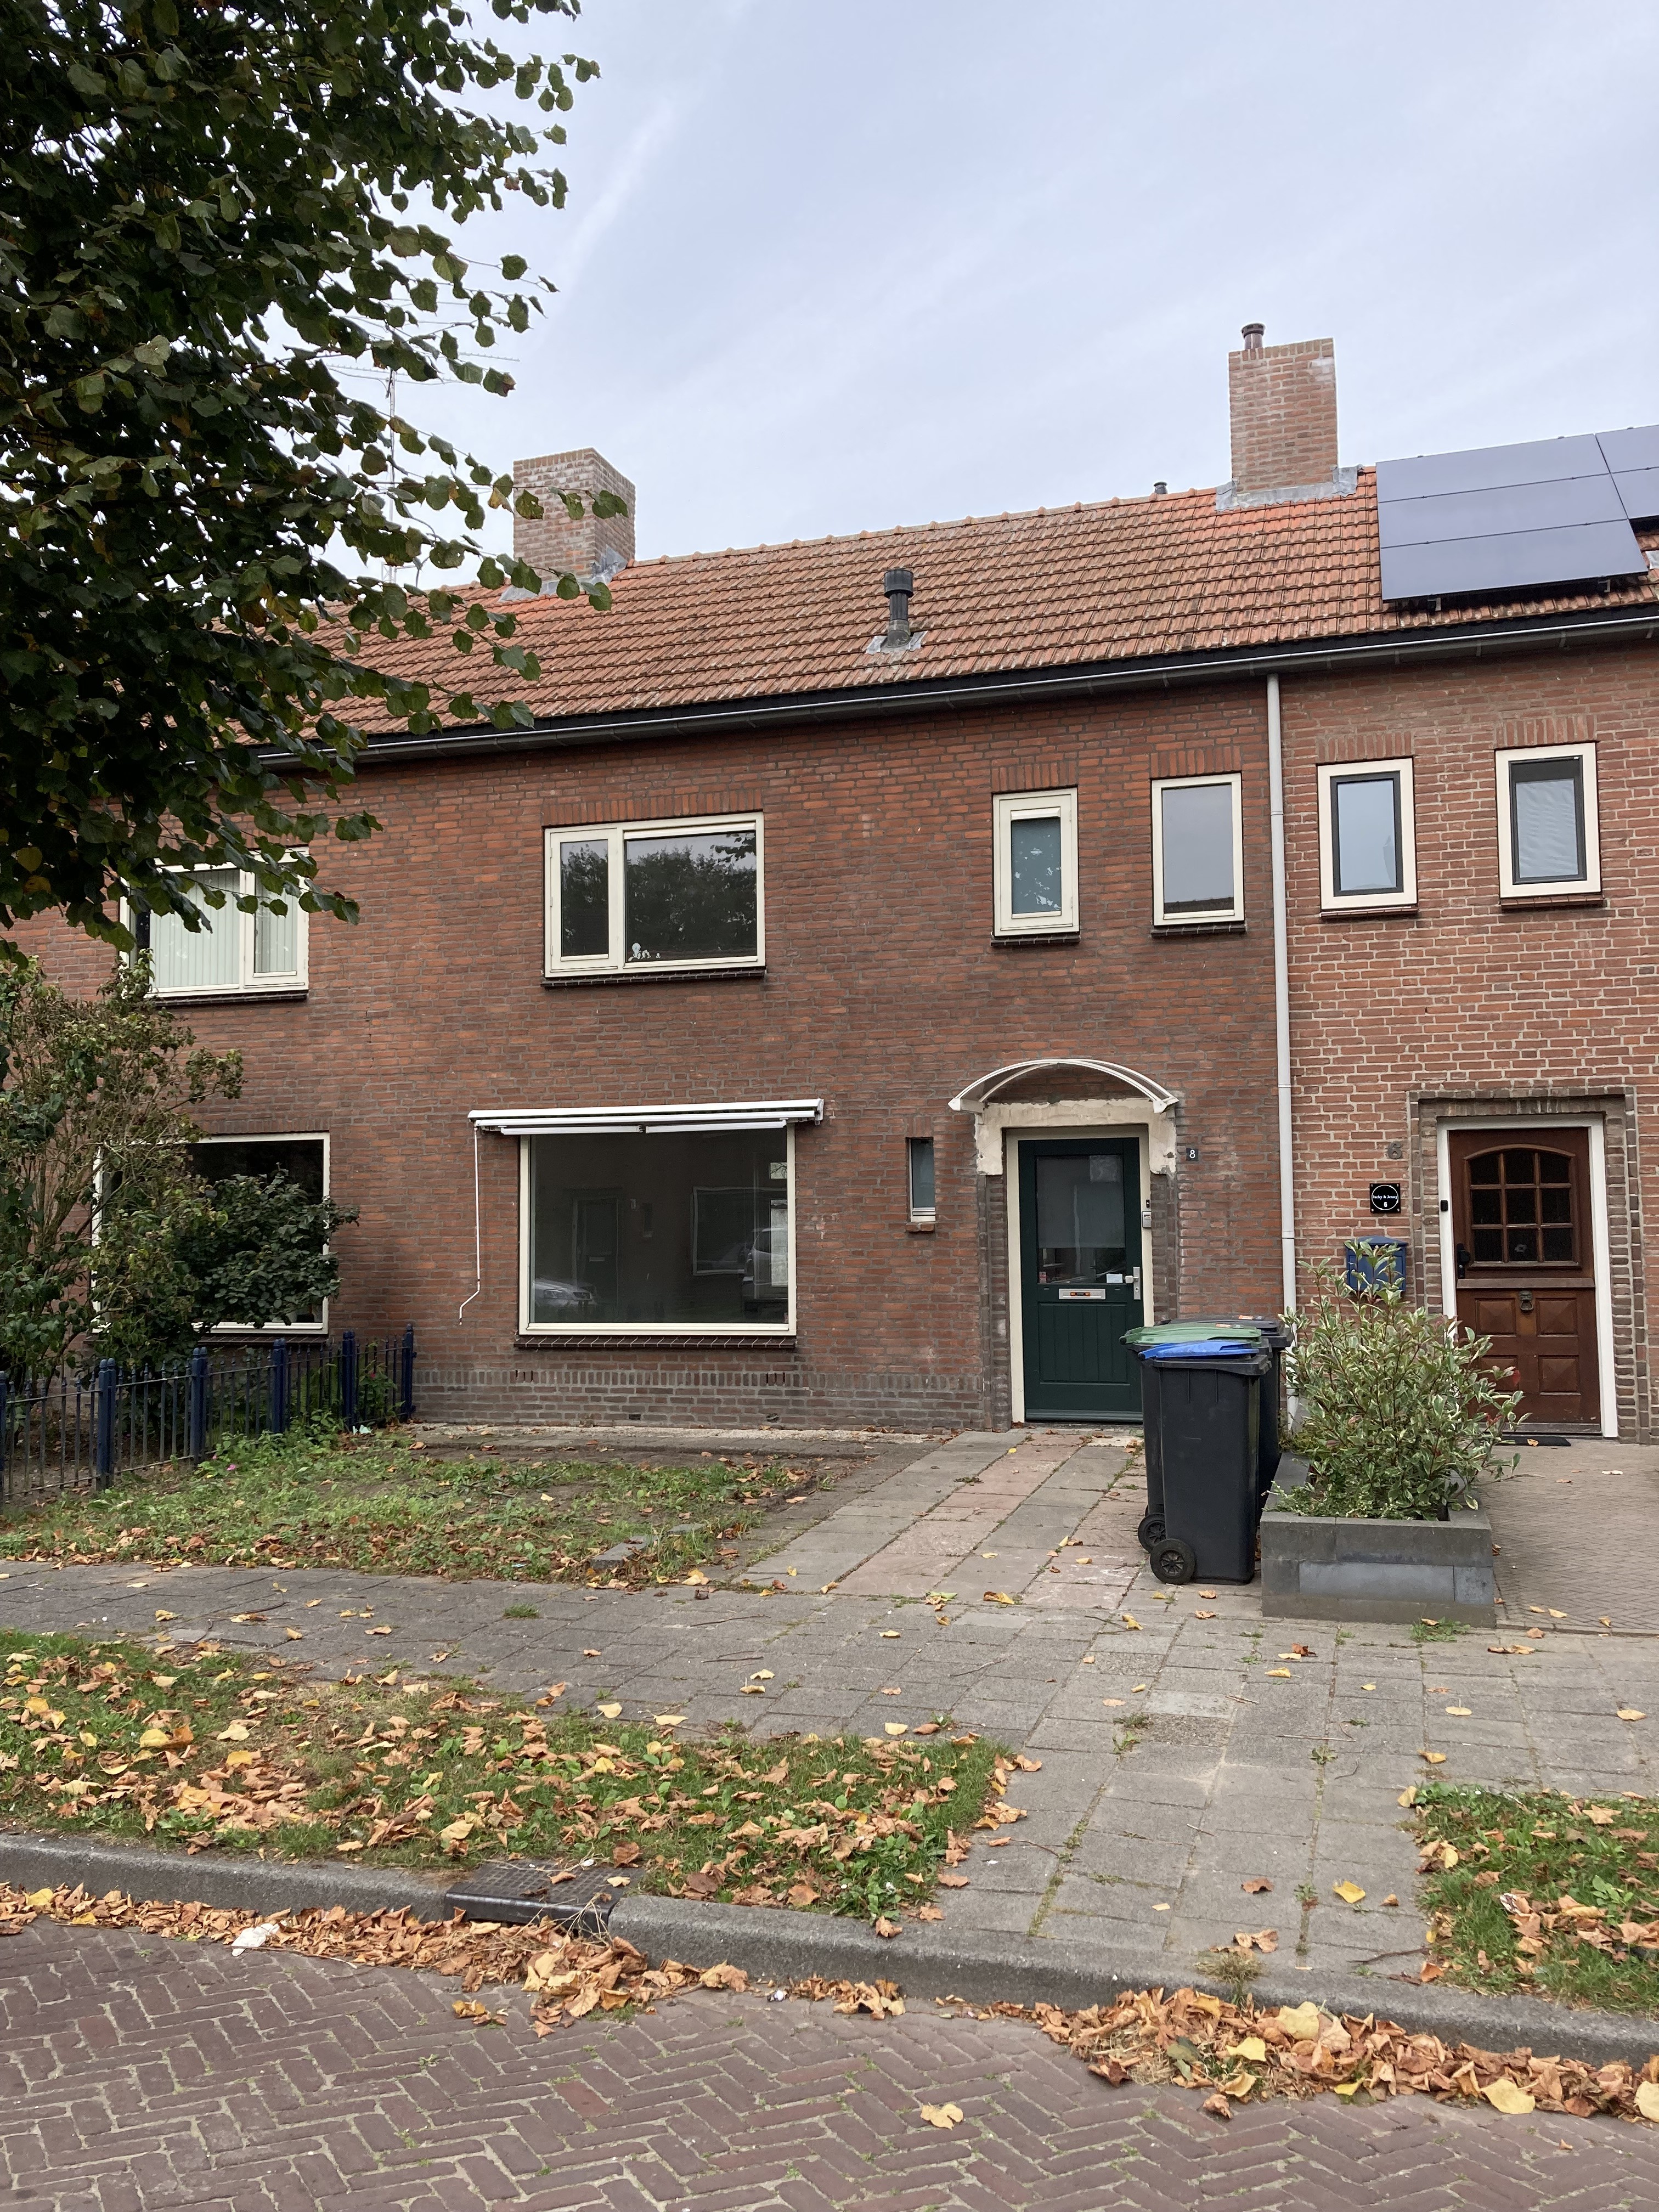 Plesmanstraat 8, 5061 SW Oisterwijk, Nederland